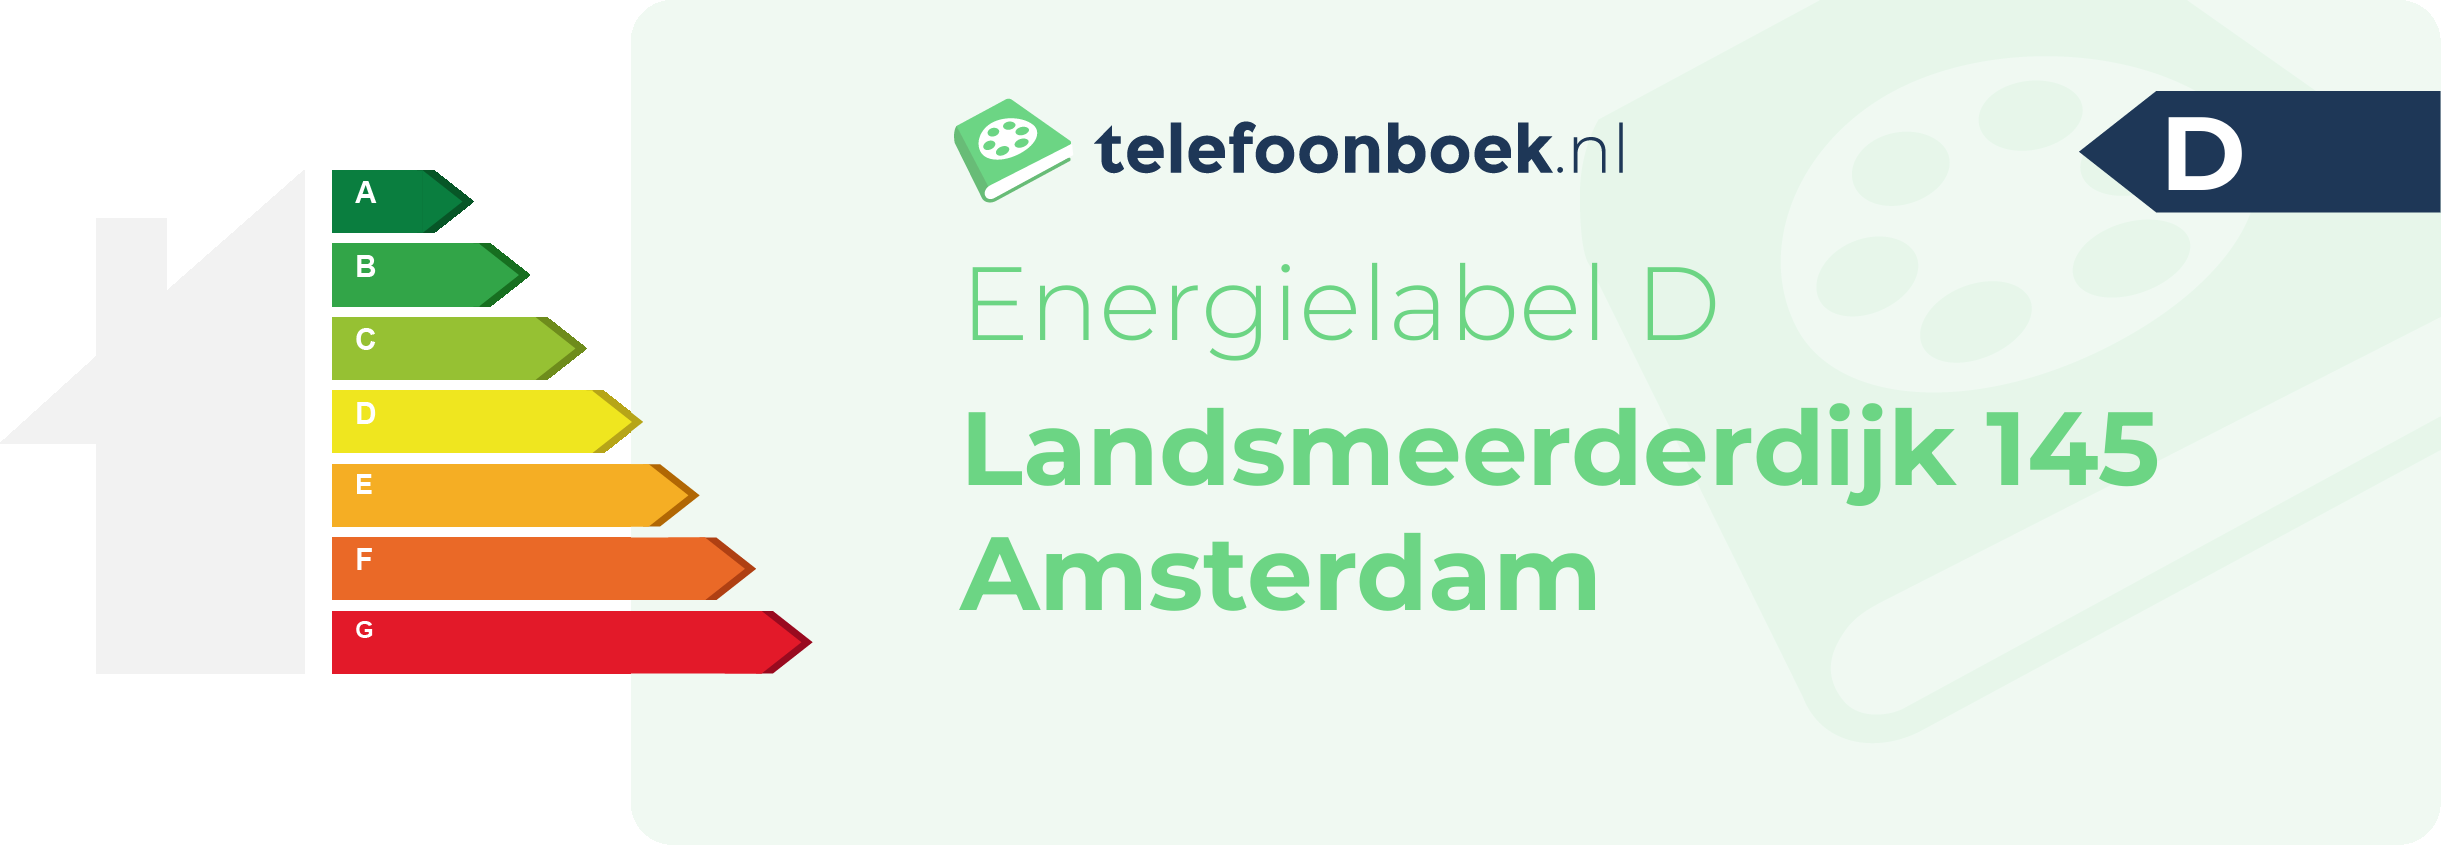 Energielabel Landsmeerderdijk 145 Amsterdam